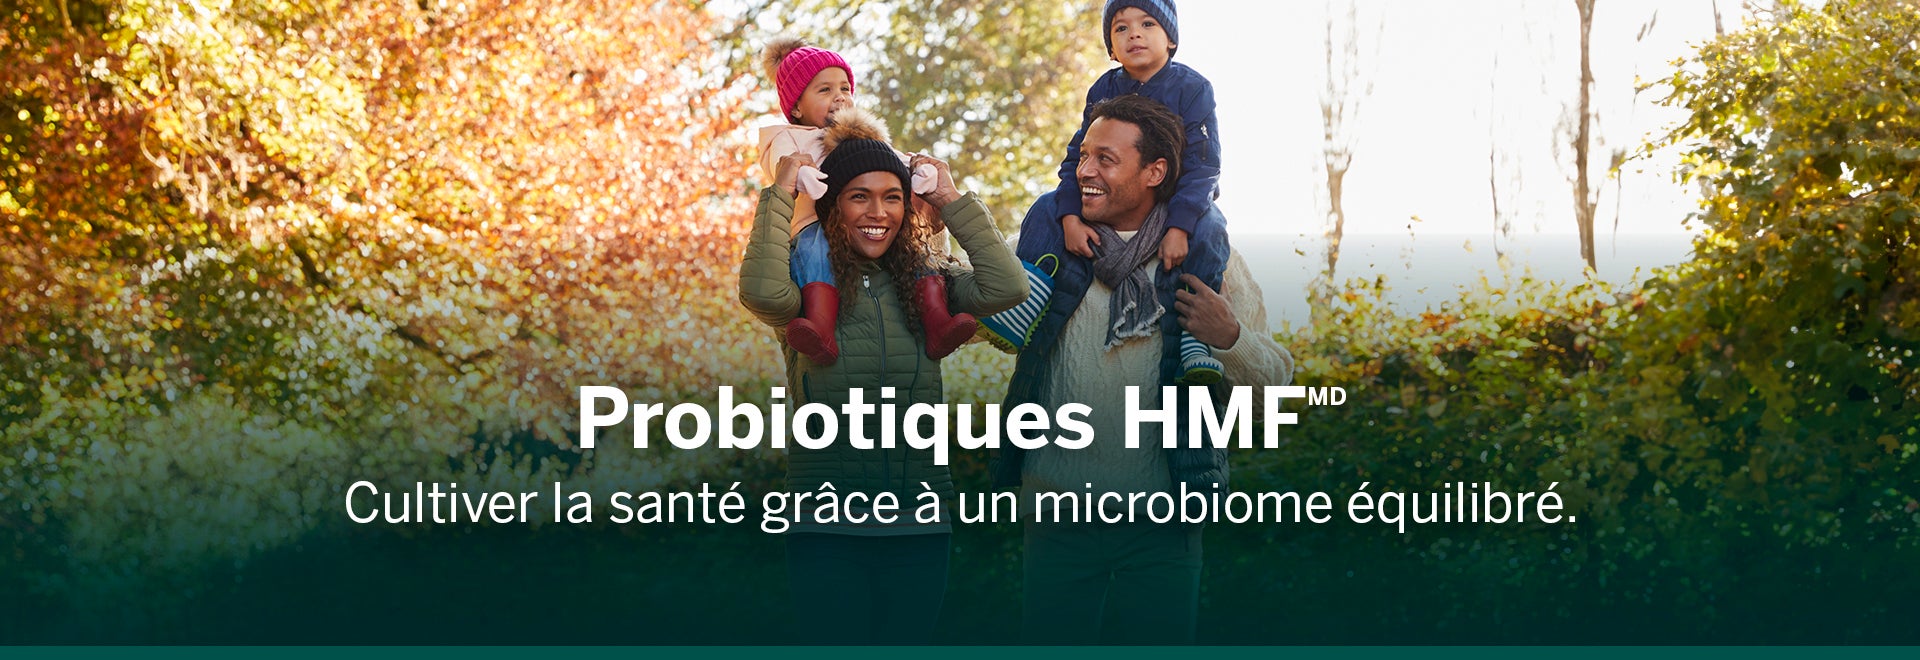 Famille marchant dehors, souriant et riant. Le mari et la femme tiennent les deux enfants sur leurs épaules et le texte indique que les probiotiques HMF cultivent la santé grâce à un microbiome équilibré.